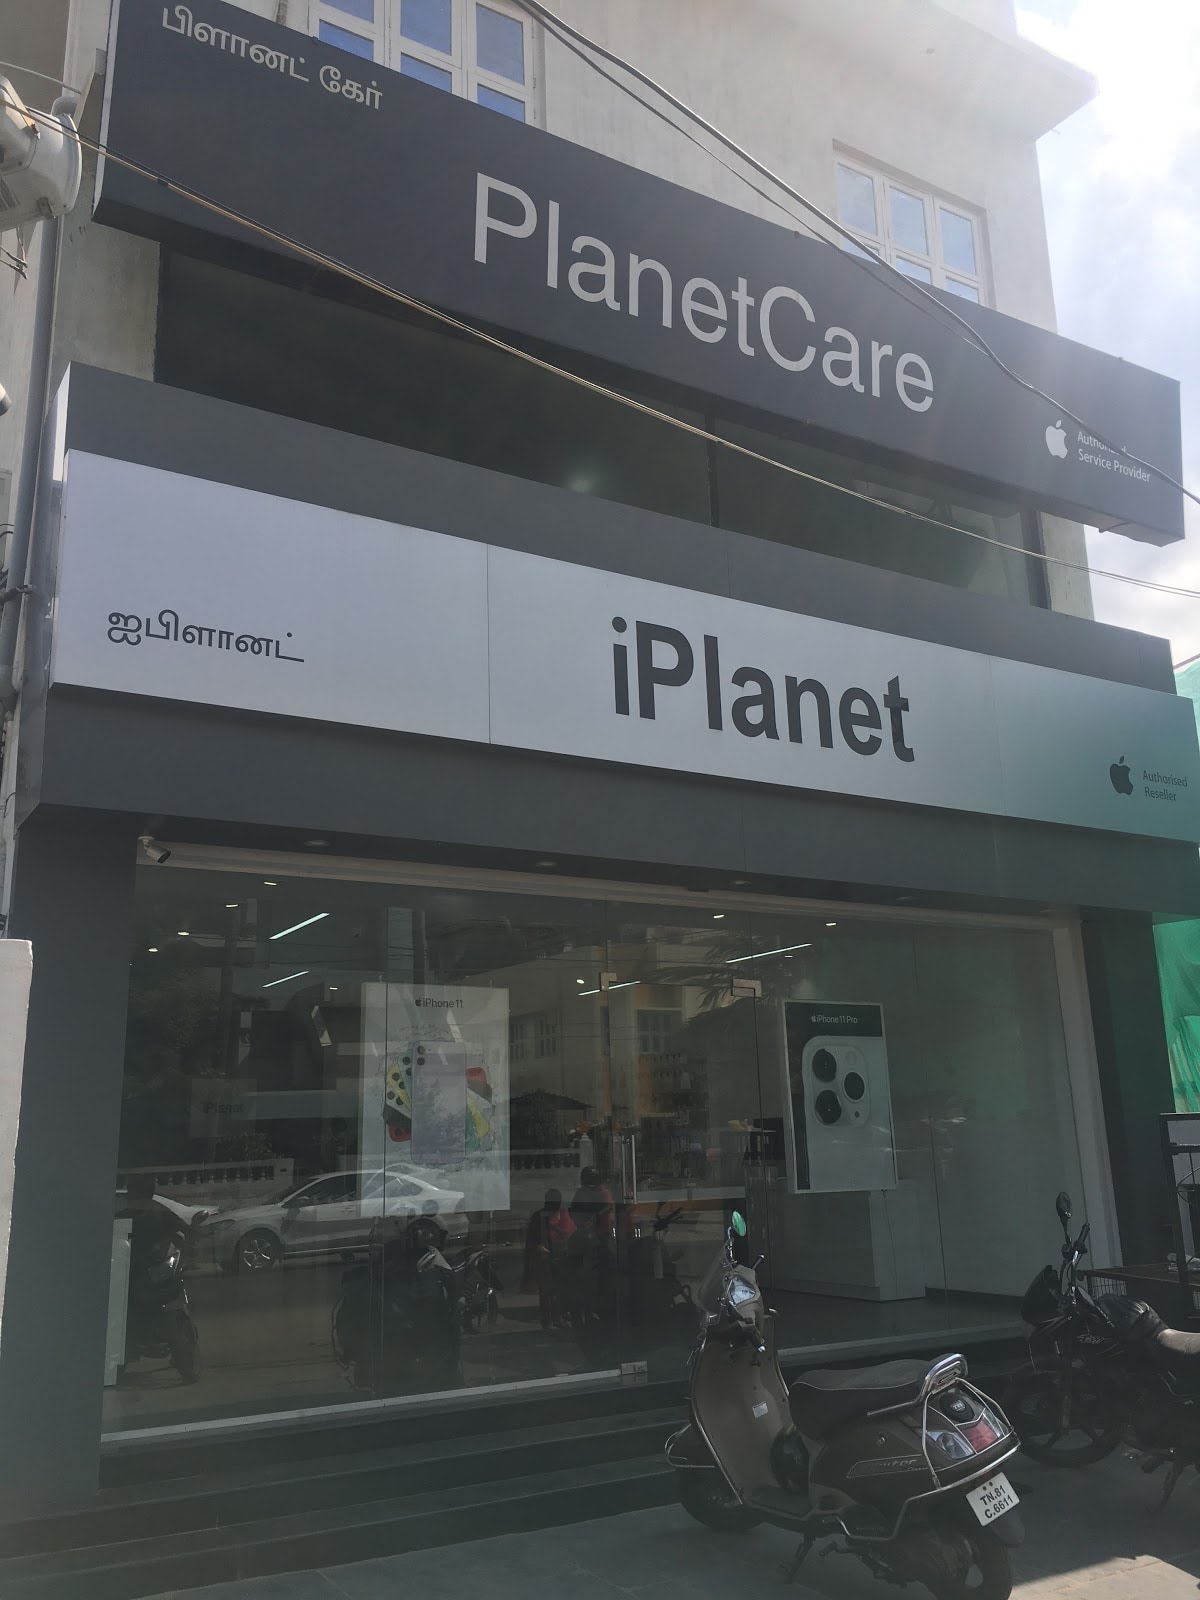 Planetcare